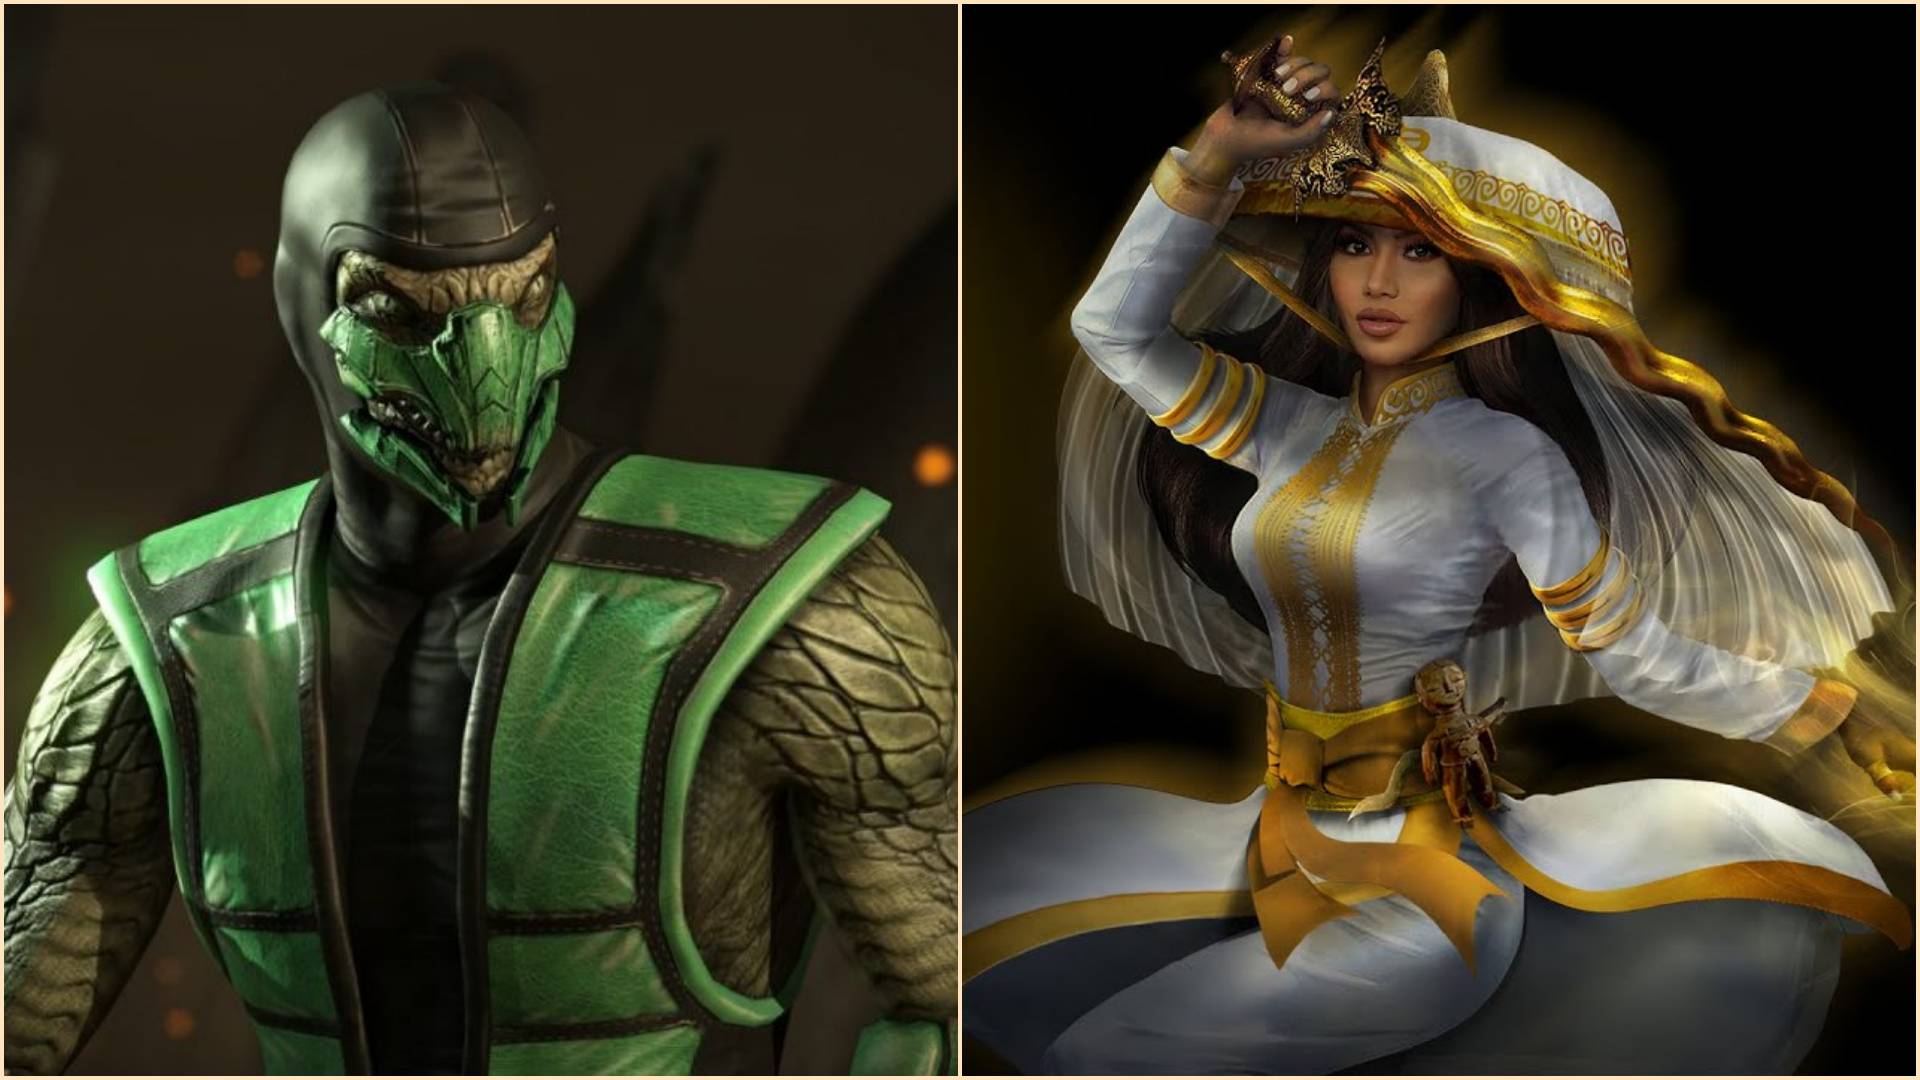 Mortal Kombat 1: novo trailer revela Reptile e velhos personagens